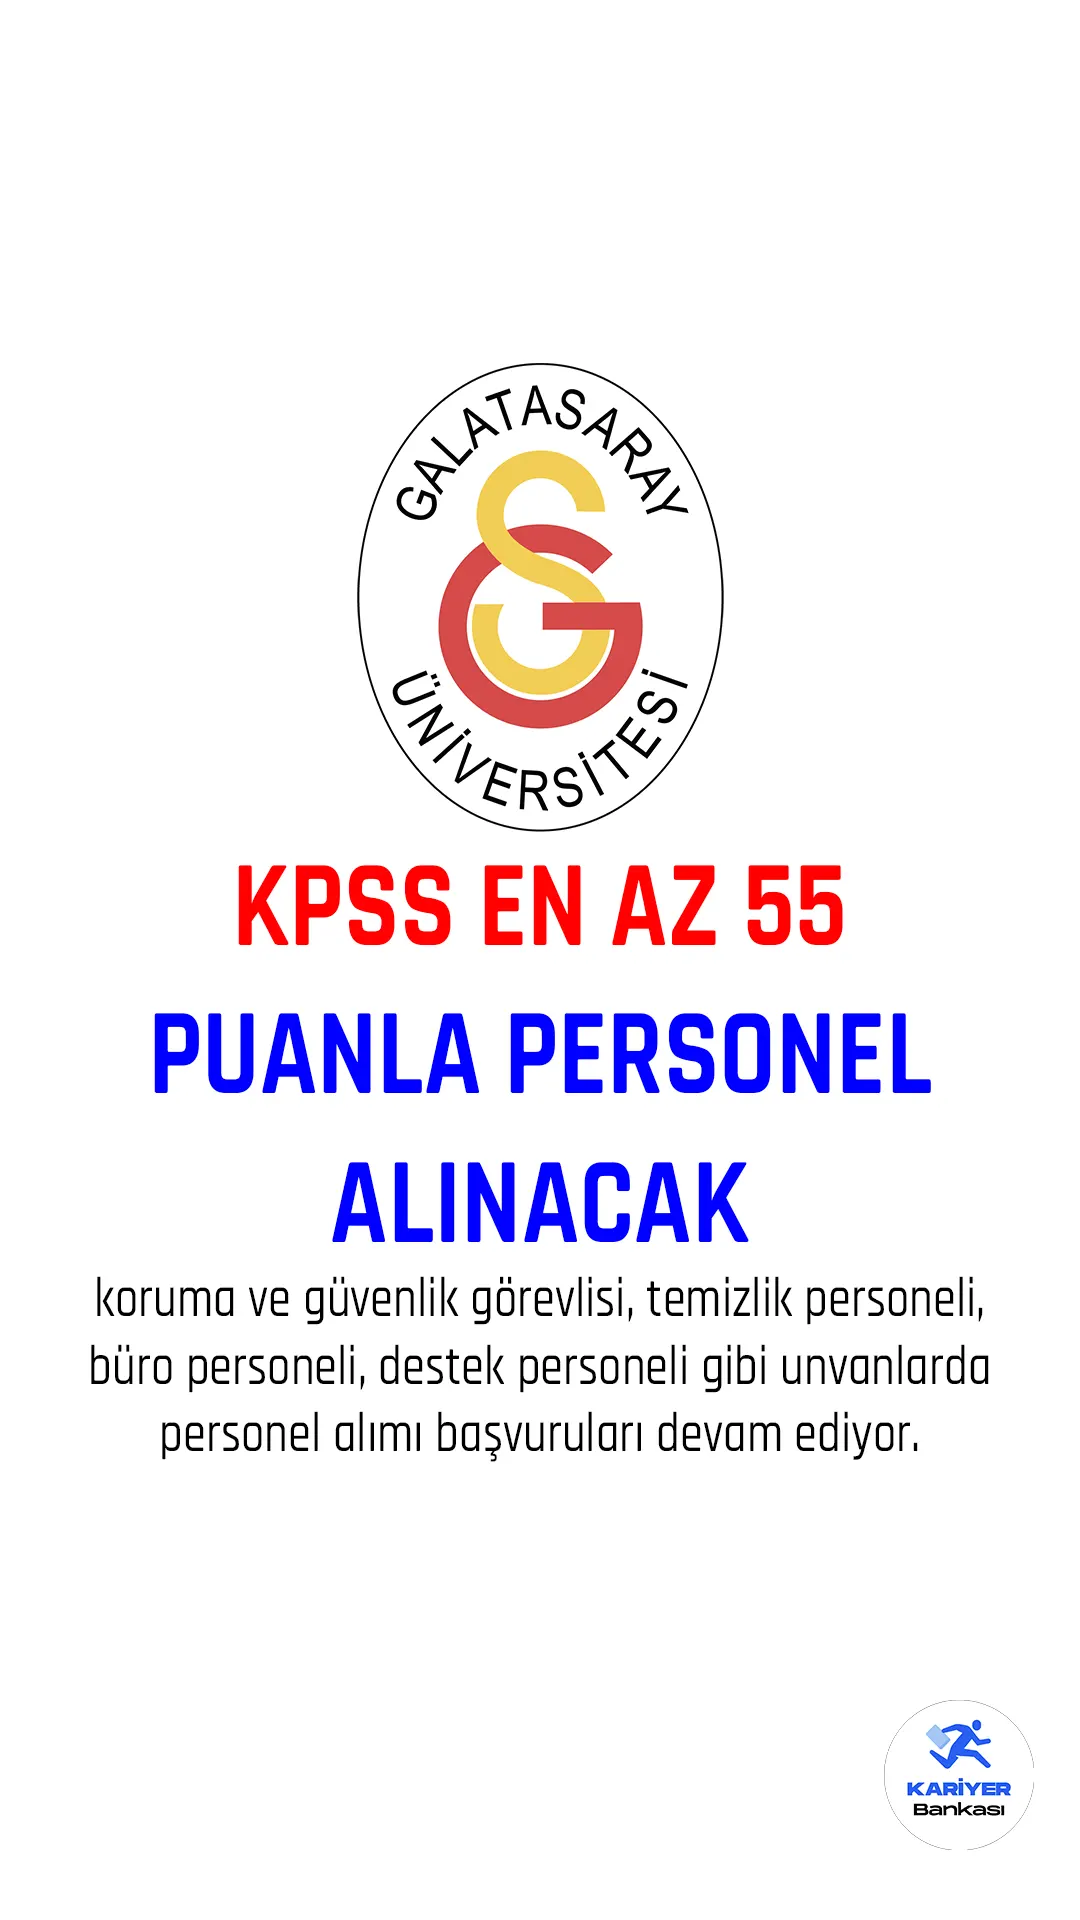 Galatasaray Üniversitesi personel alımı başvuru süreci devam ediyor.